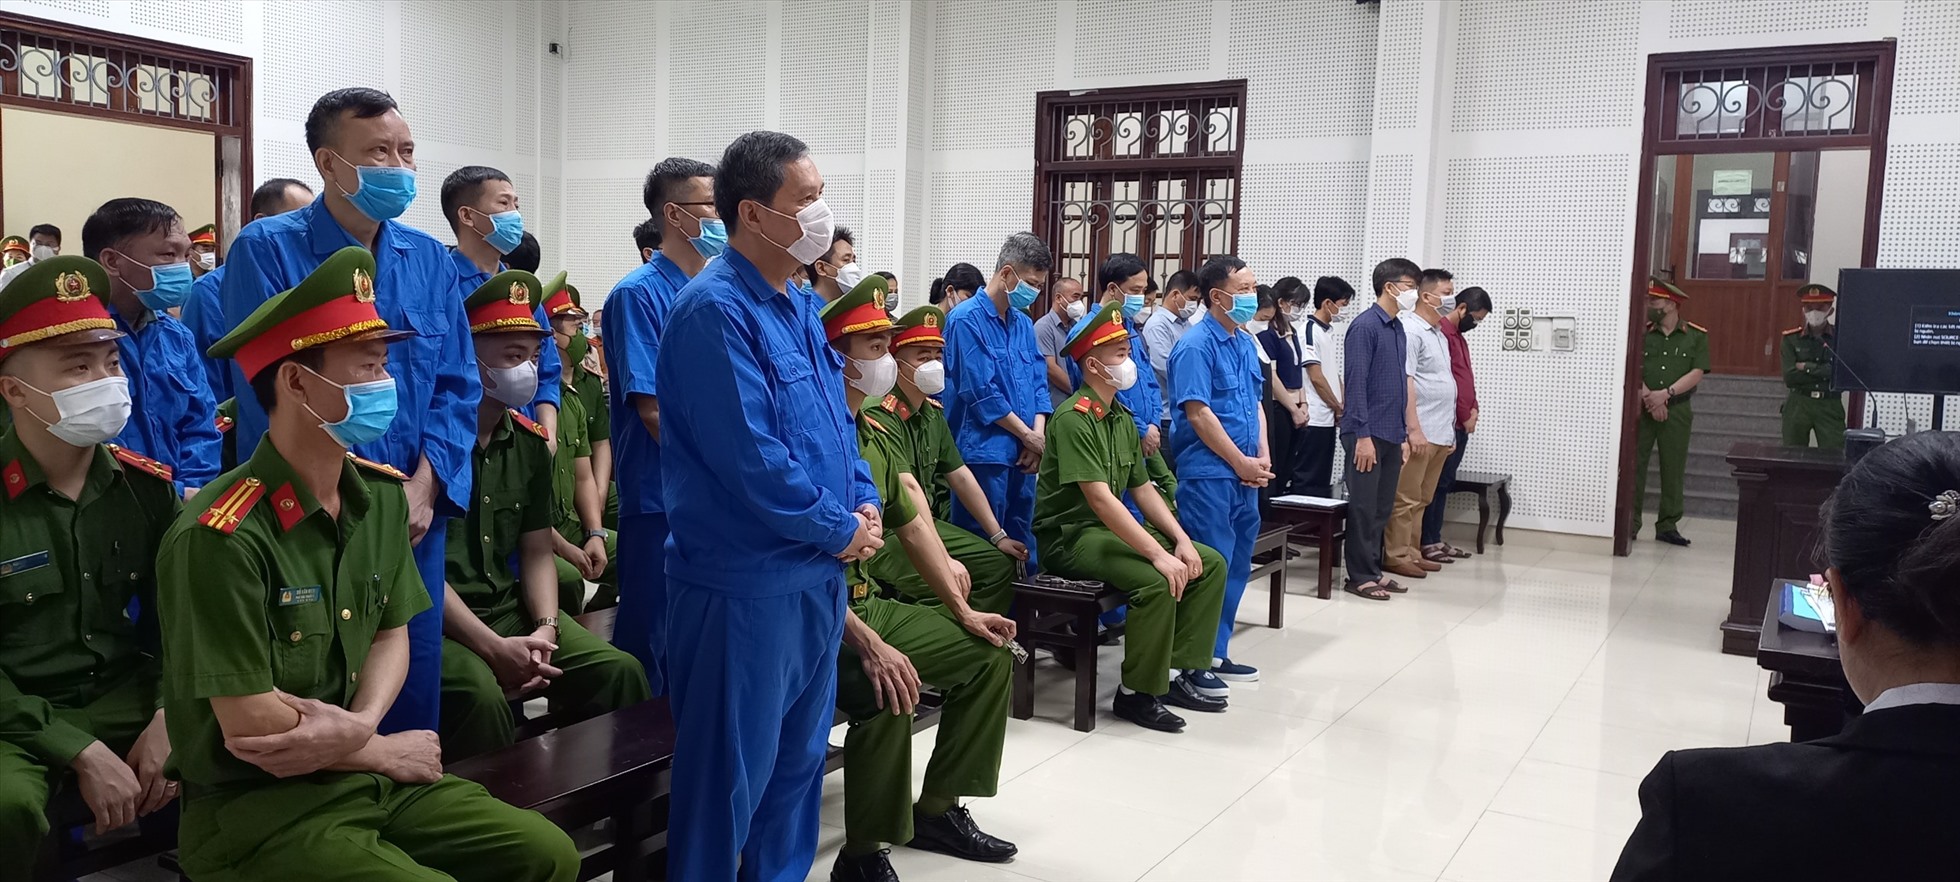 Nguyên Chủ tịch UBND TP.Hạ Long Phạm Hồng Hà tại phiên tòa sáng nay (19.4). Ảnh: Nguyễn Hùng